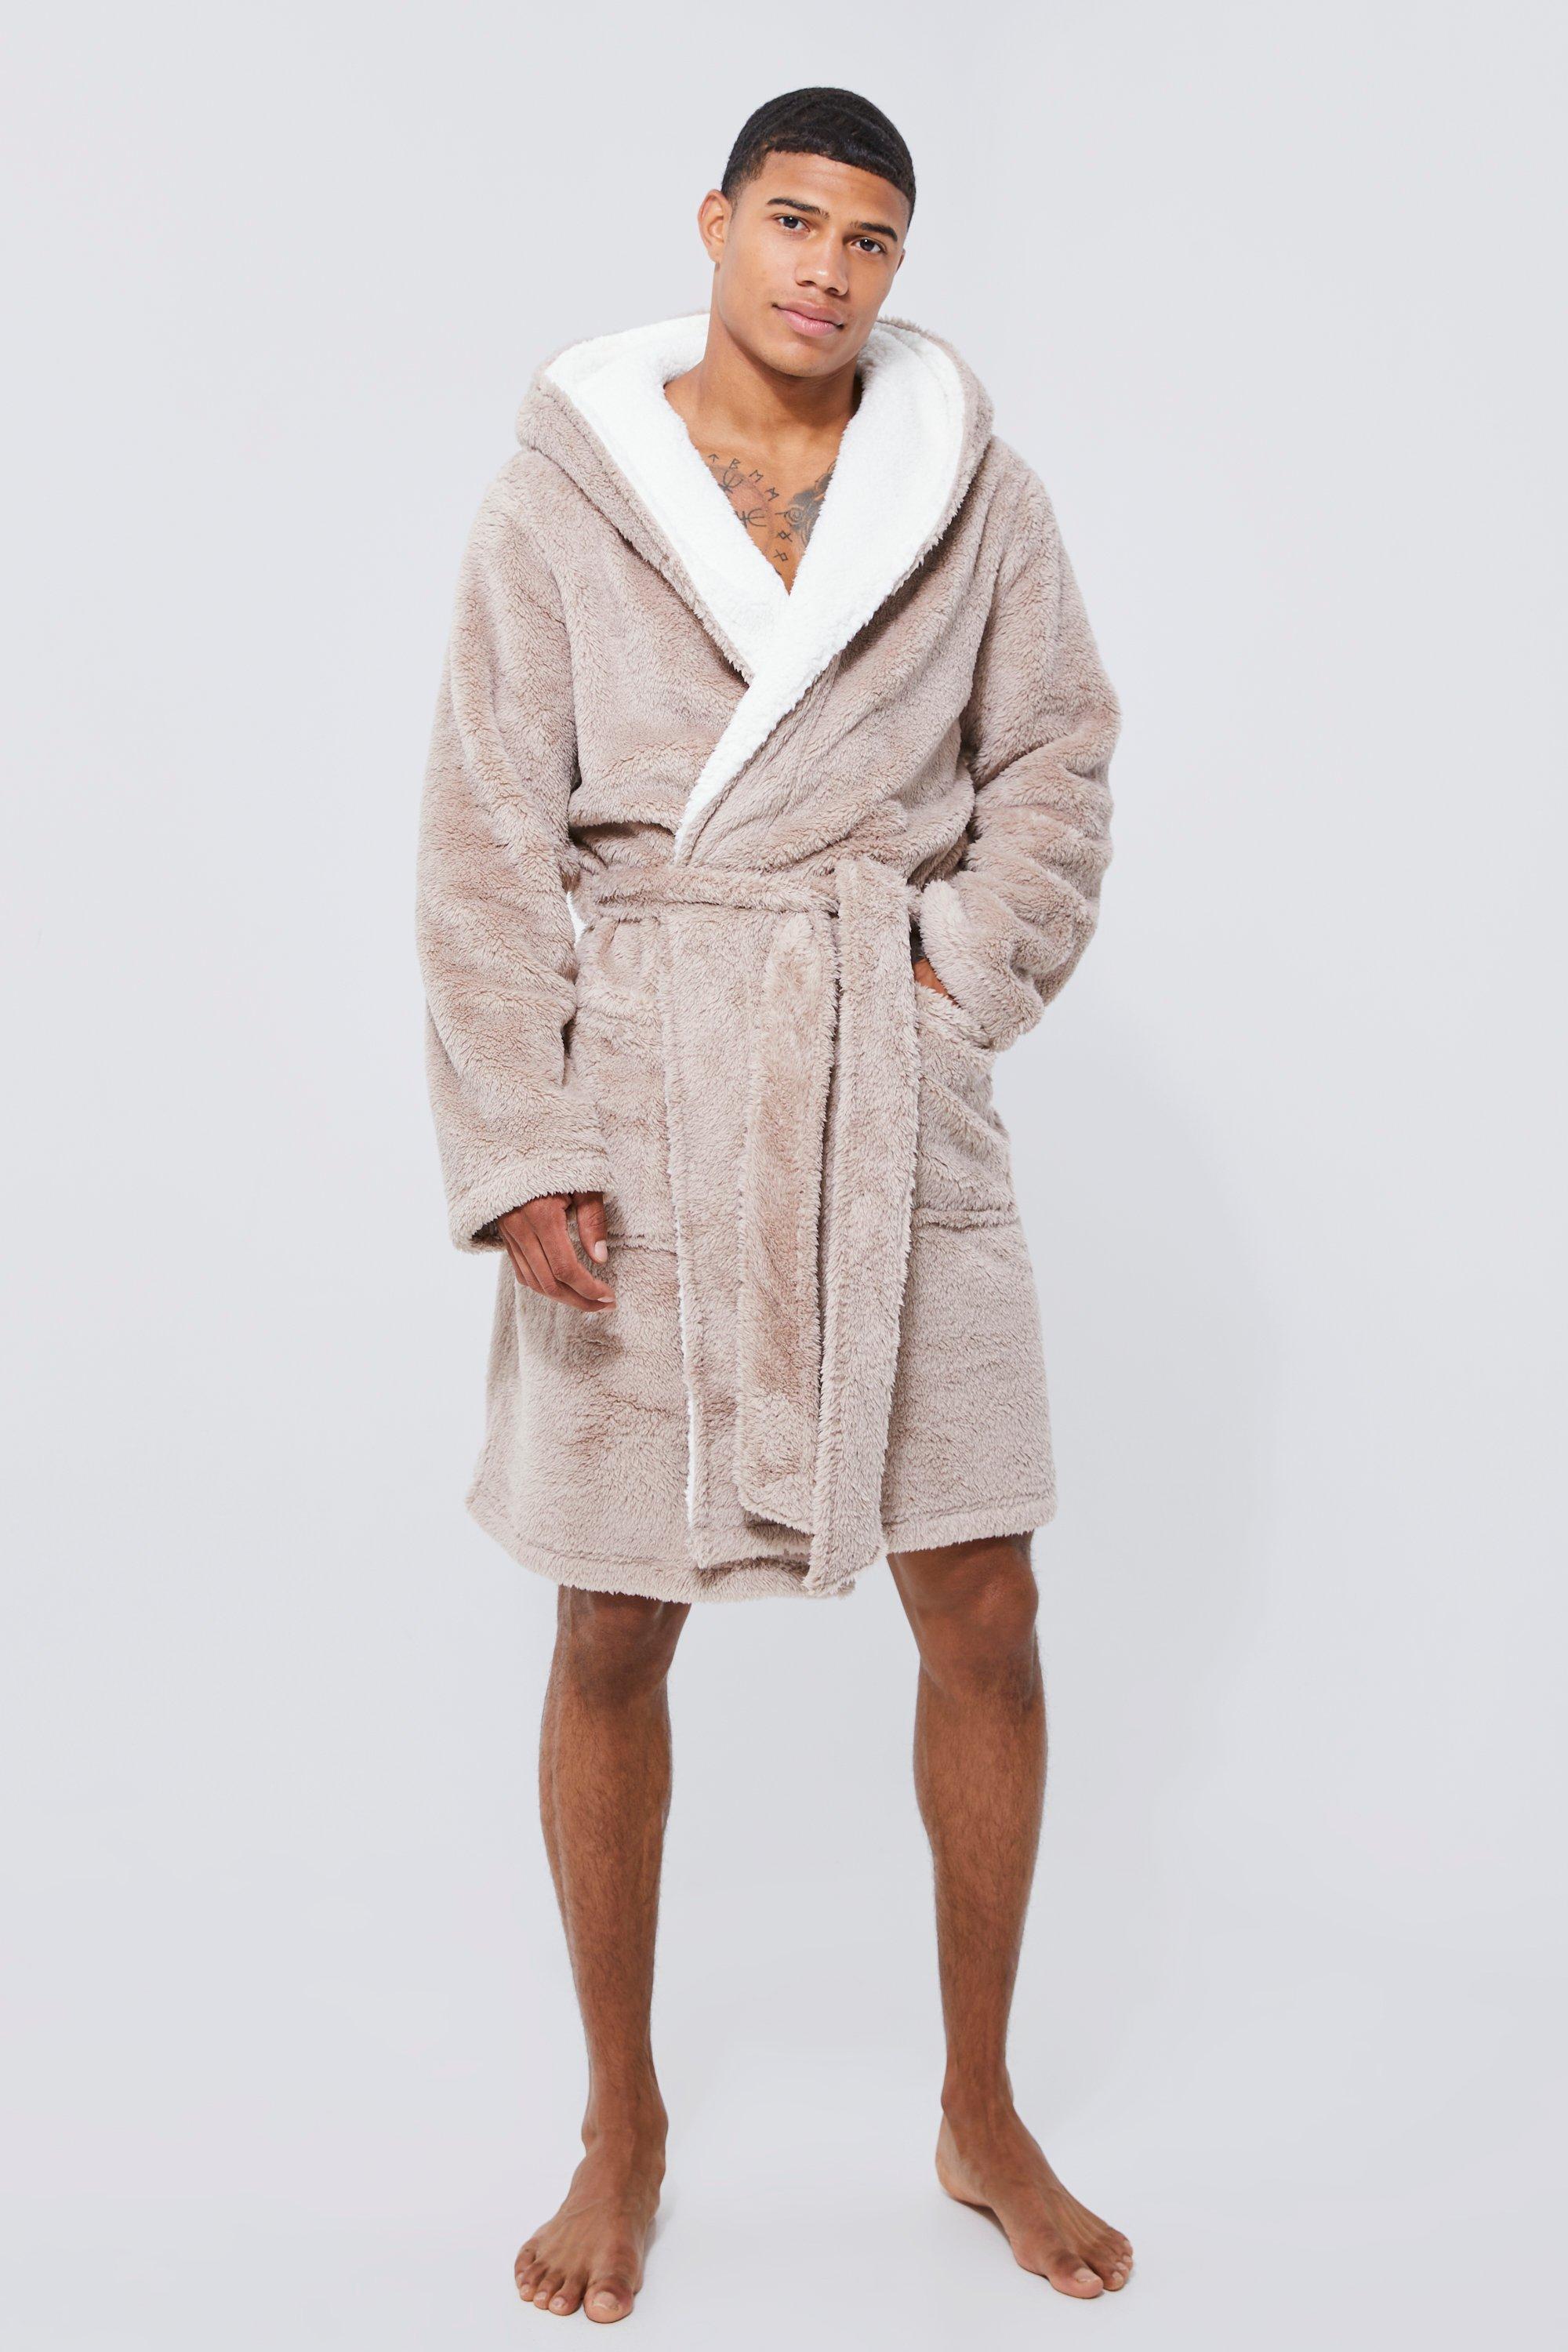 dressing gown de chambre en polaire à capuche homme - taupe - xl, taupe